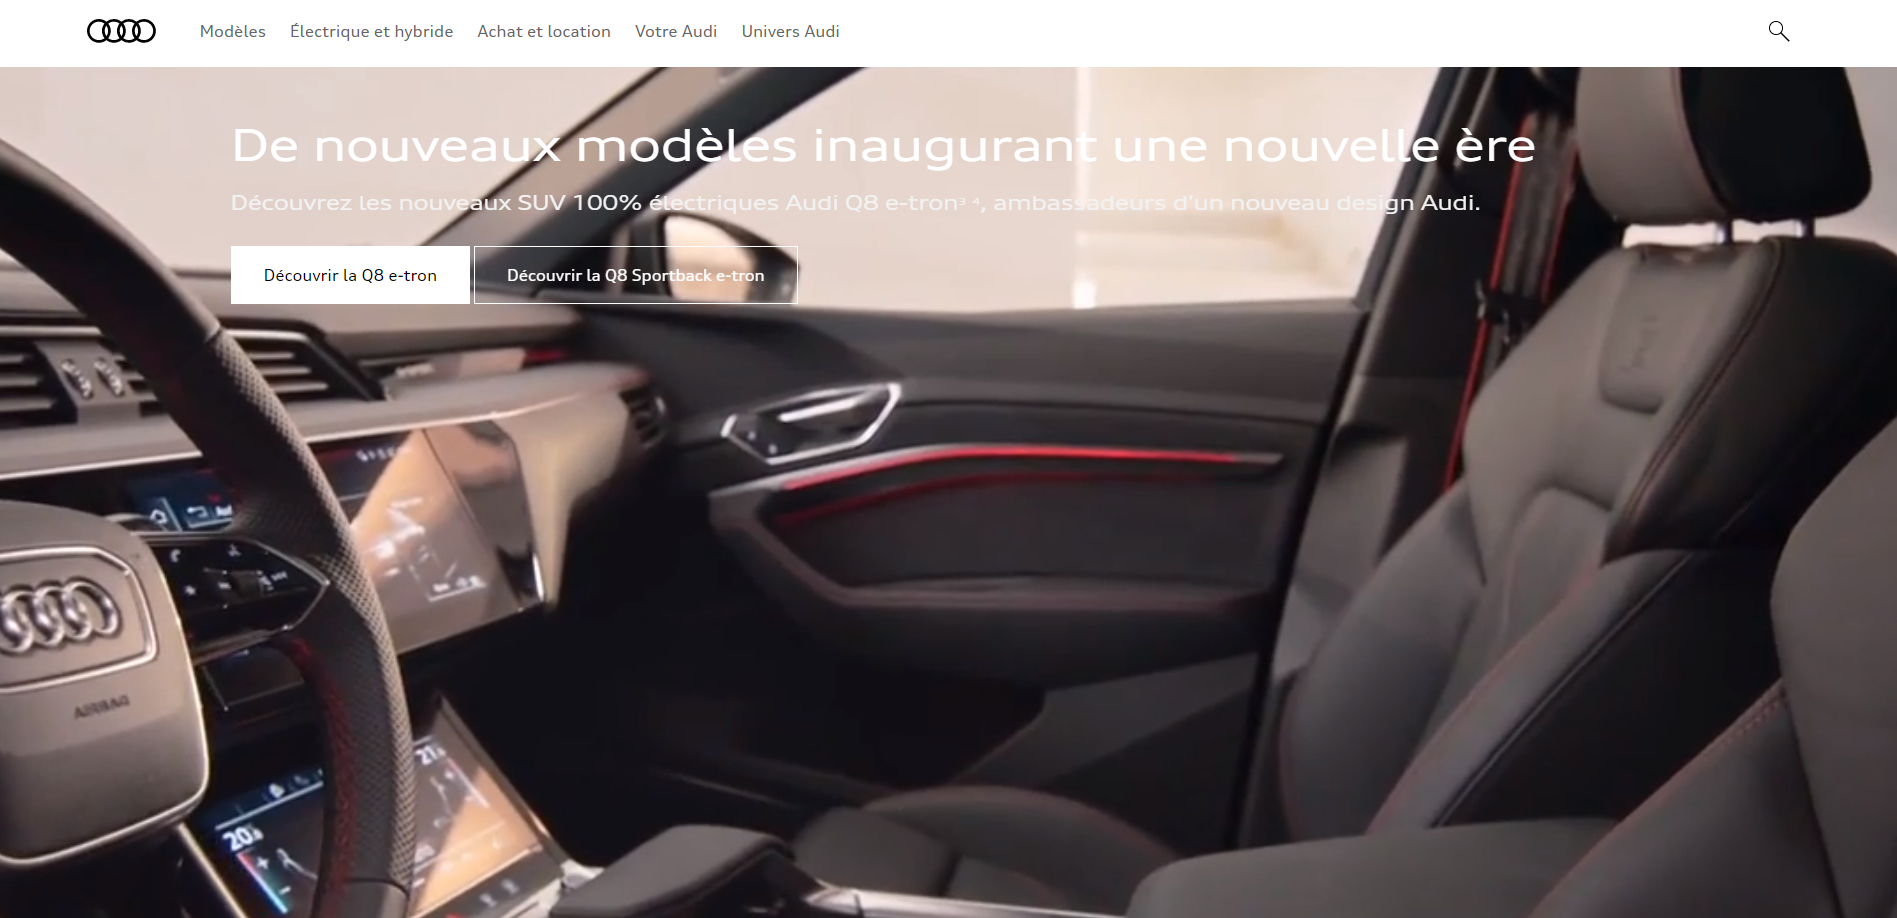 Identité visuelle Audi - Site officiel | Sortlist Blog